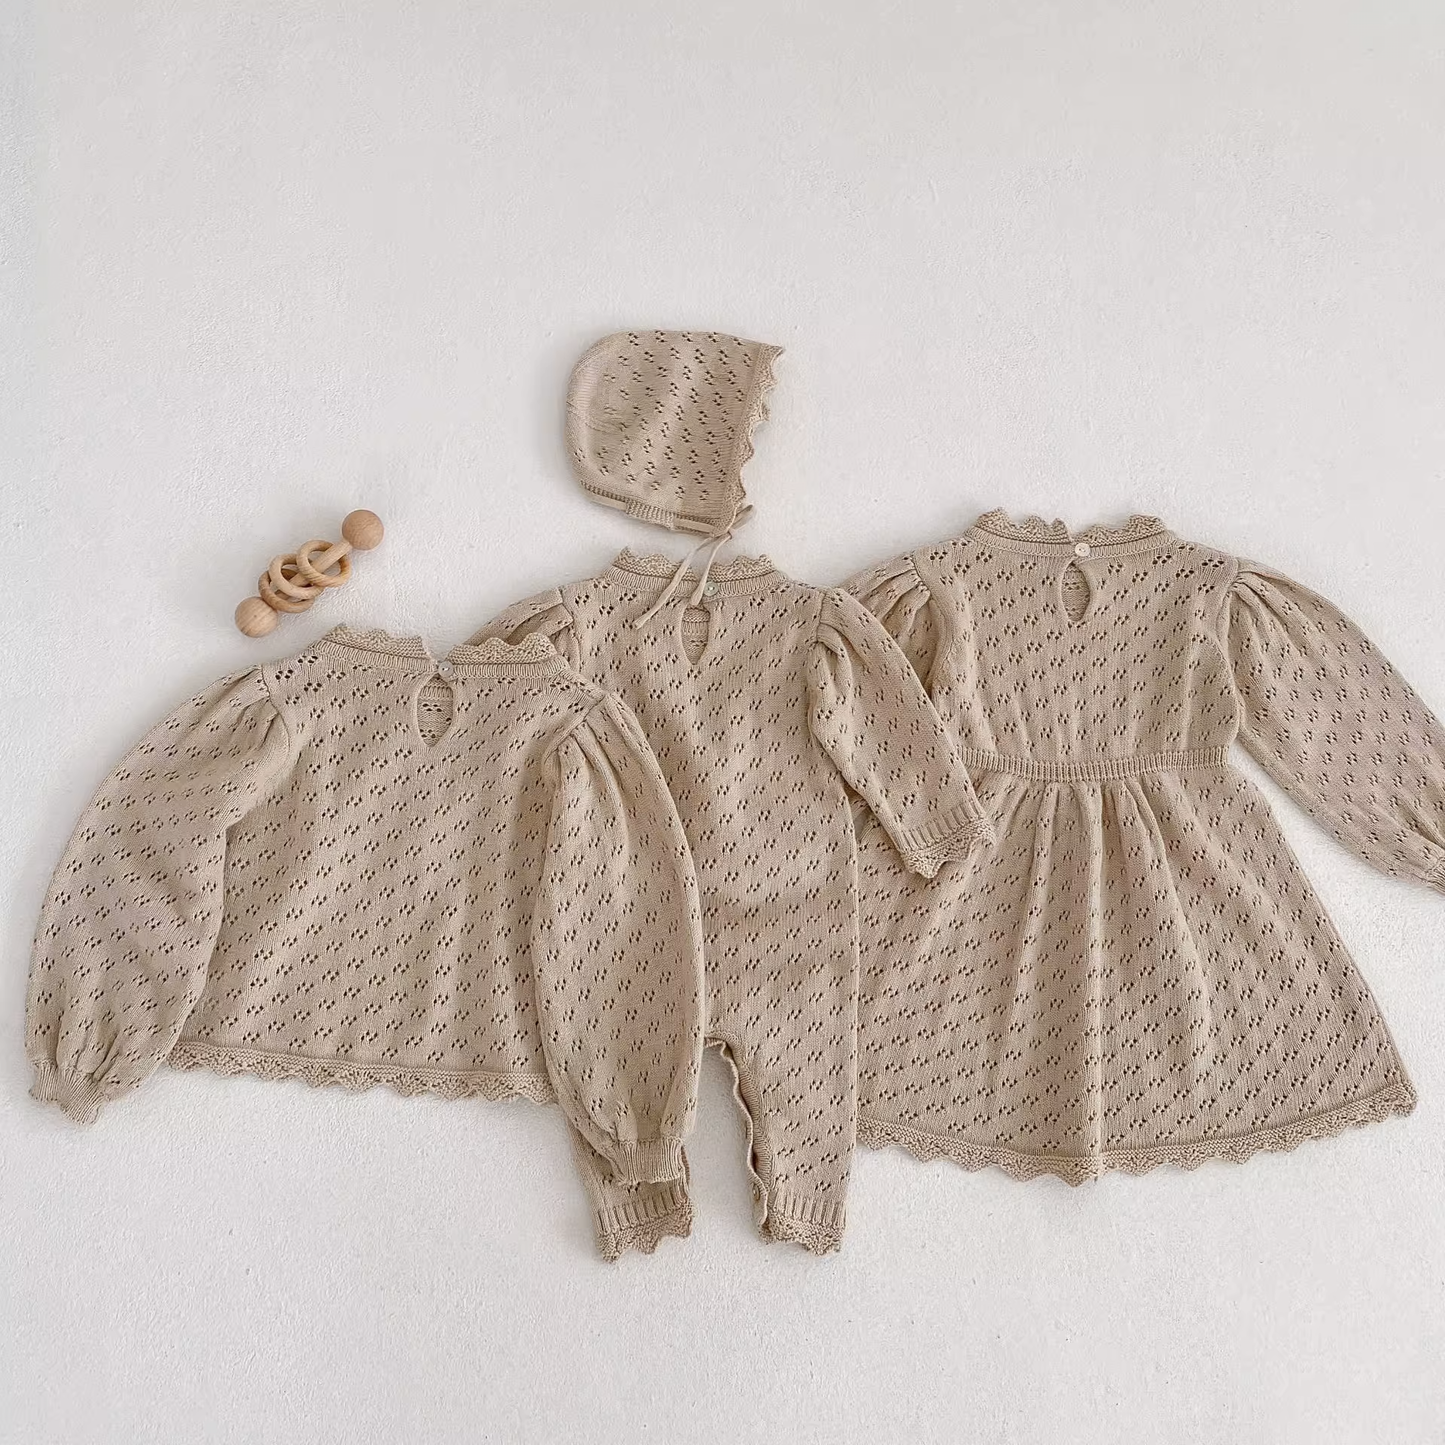 Lizz Knit Dress